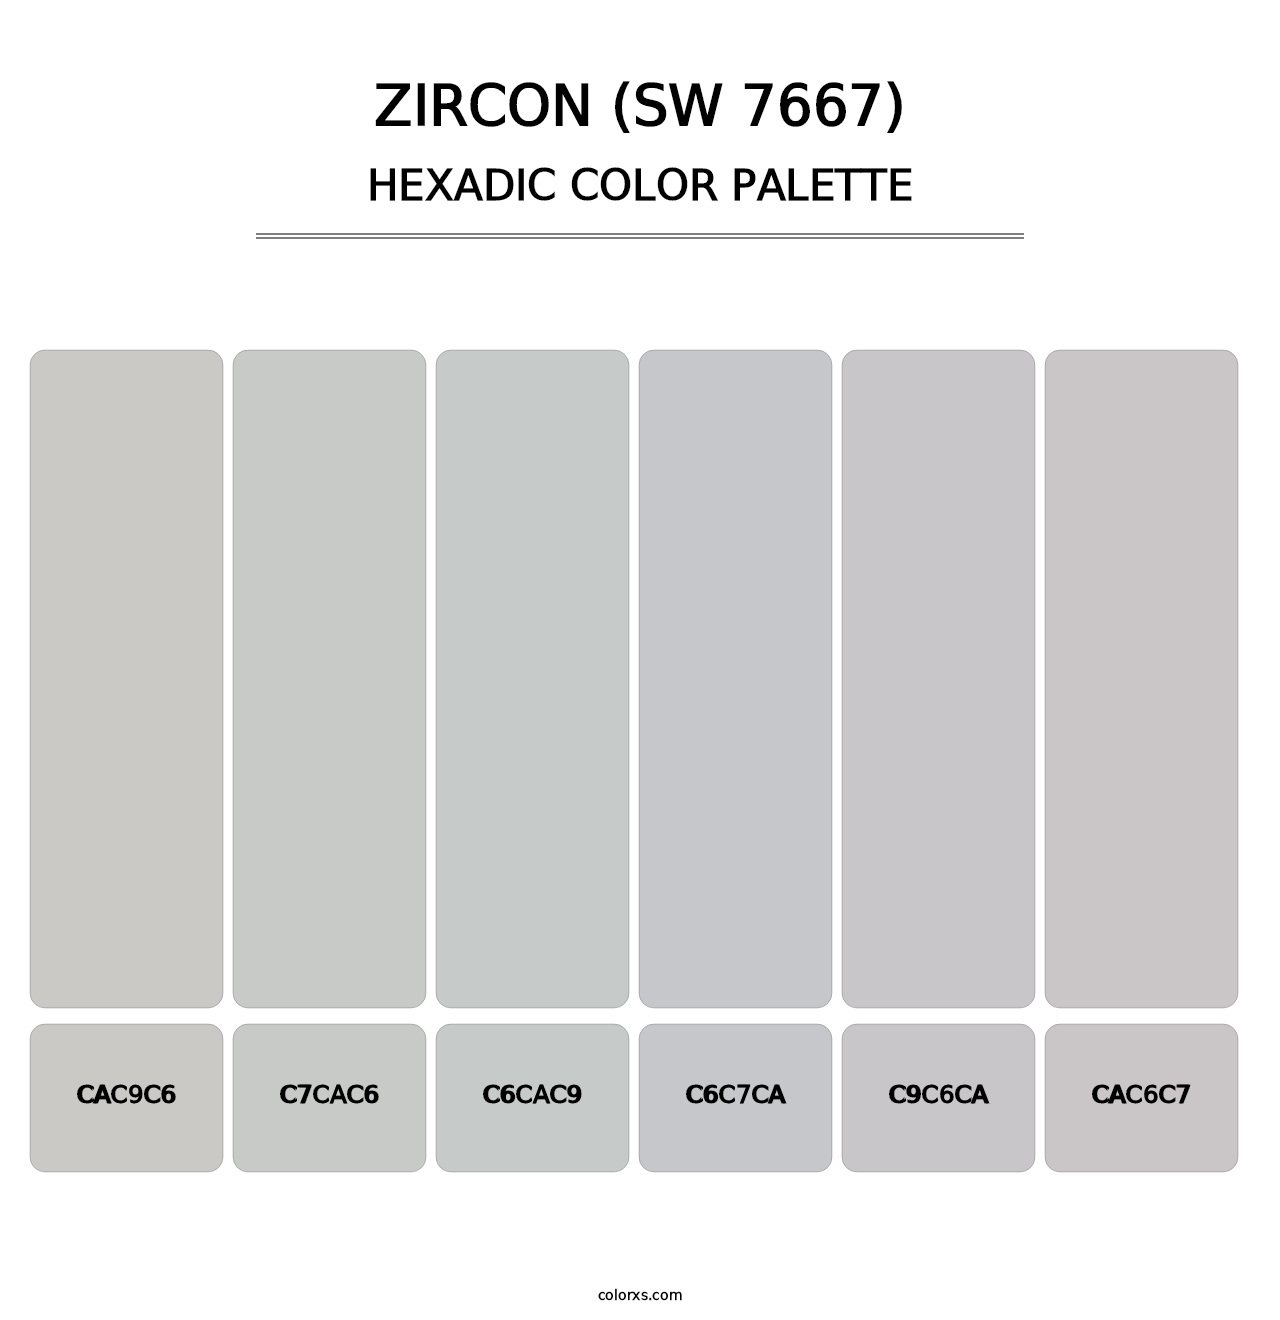 Zircon (SW 7667) - Hexadic Color Palette